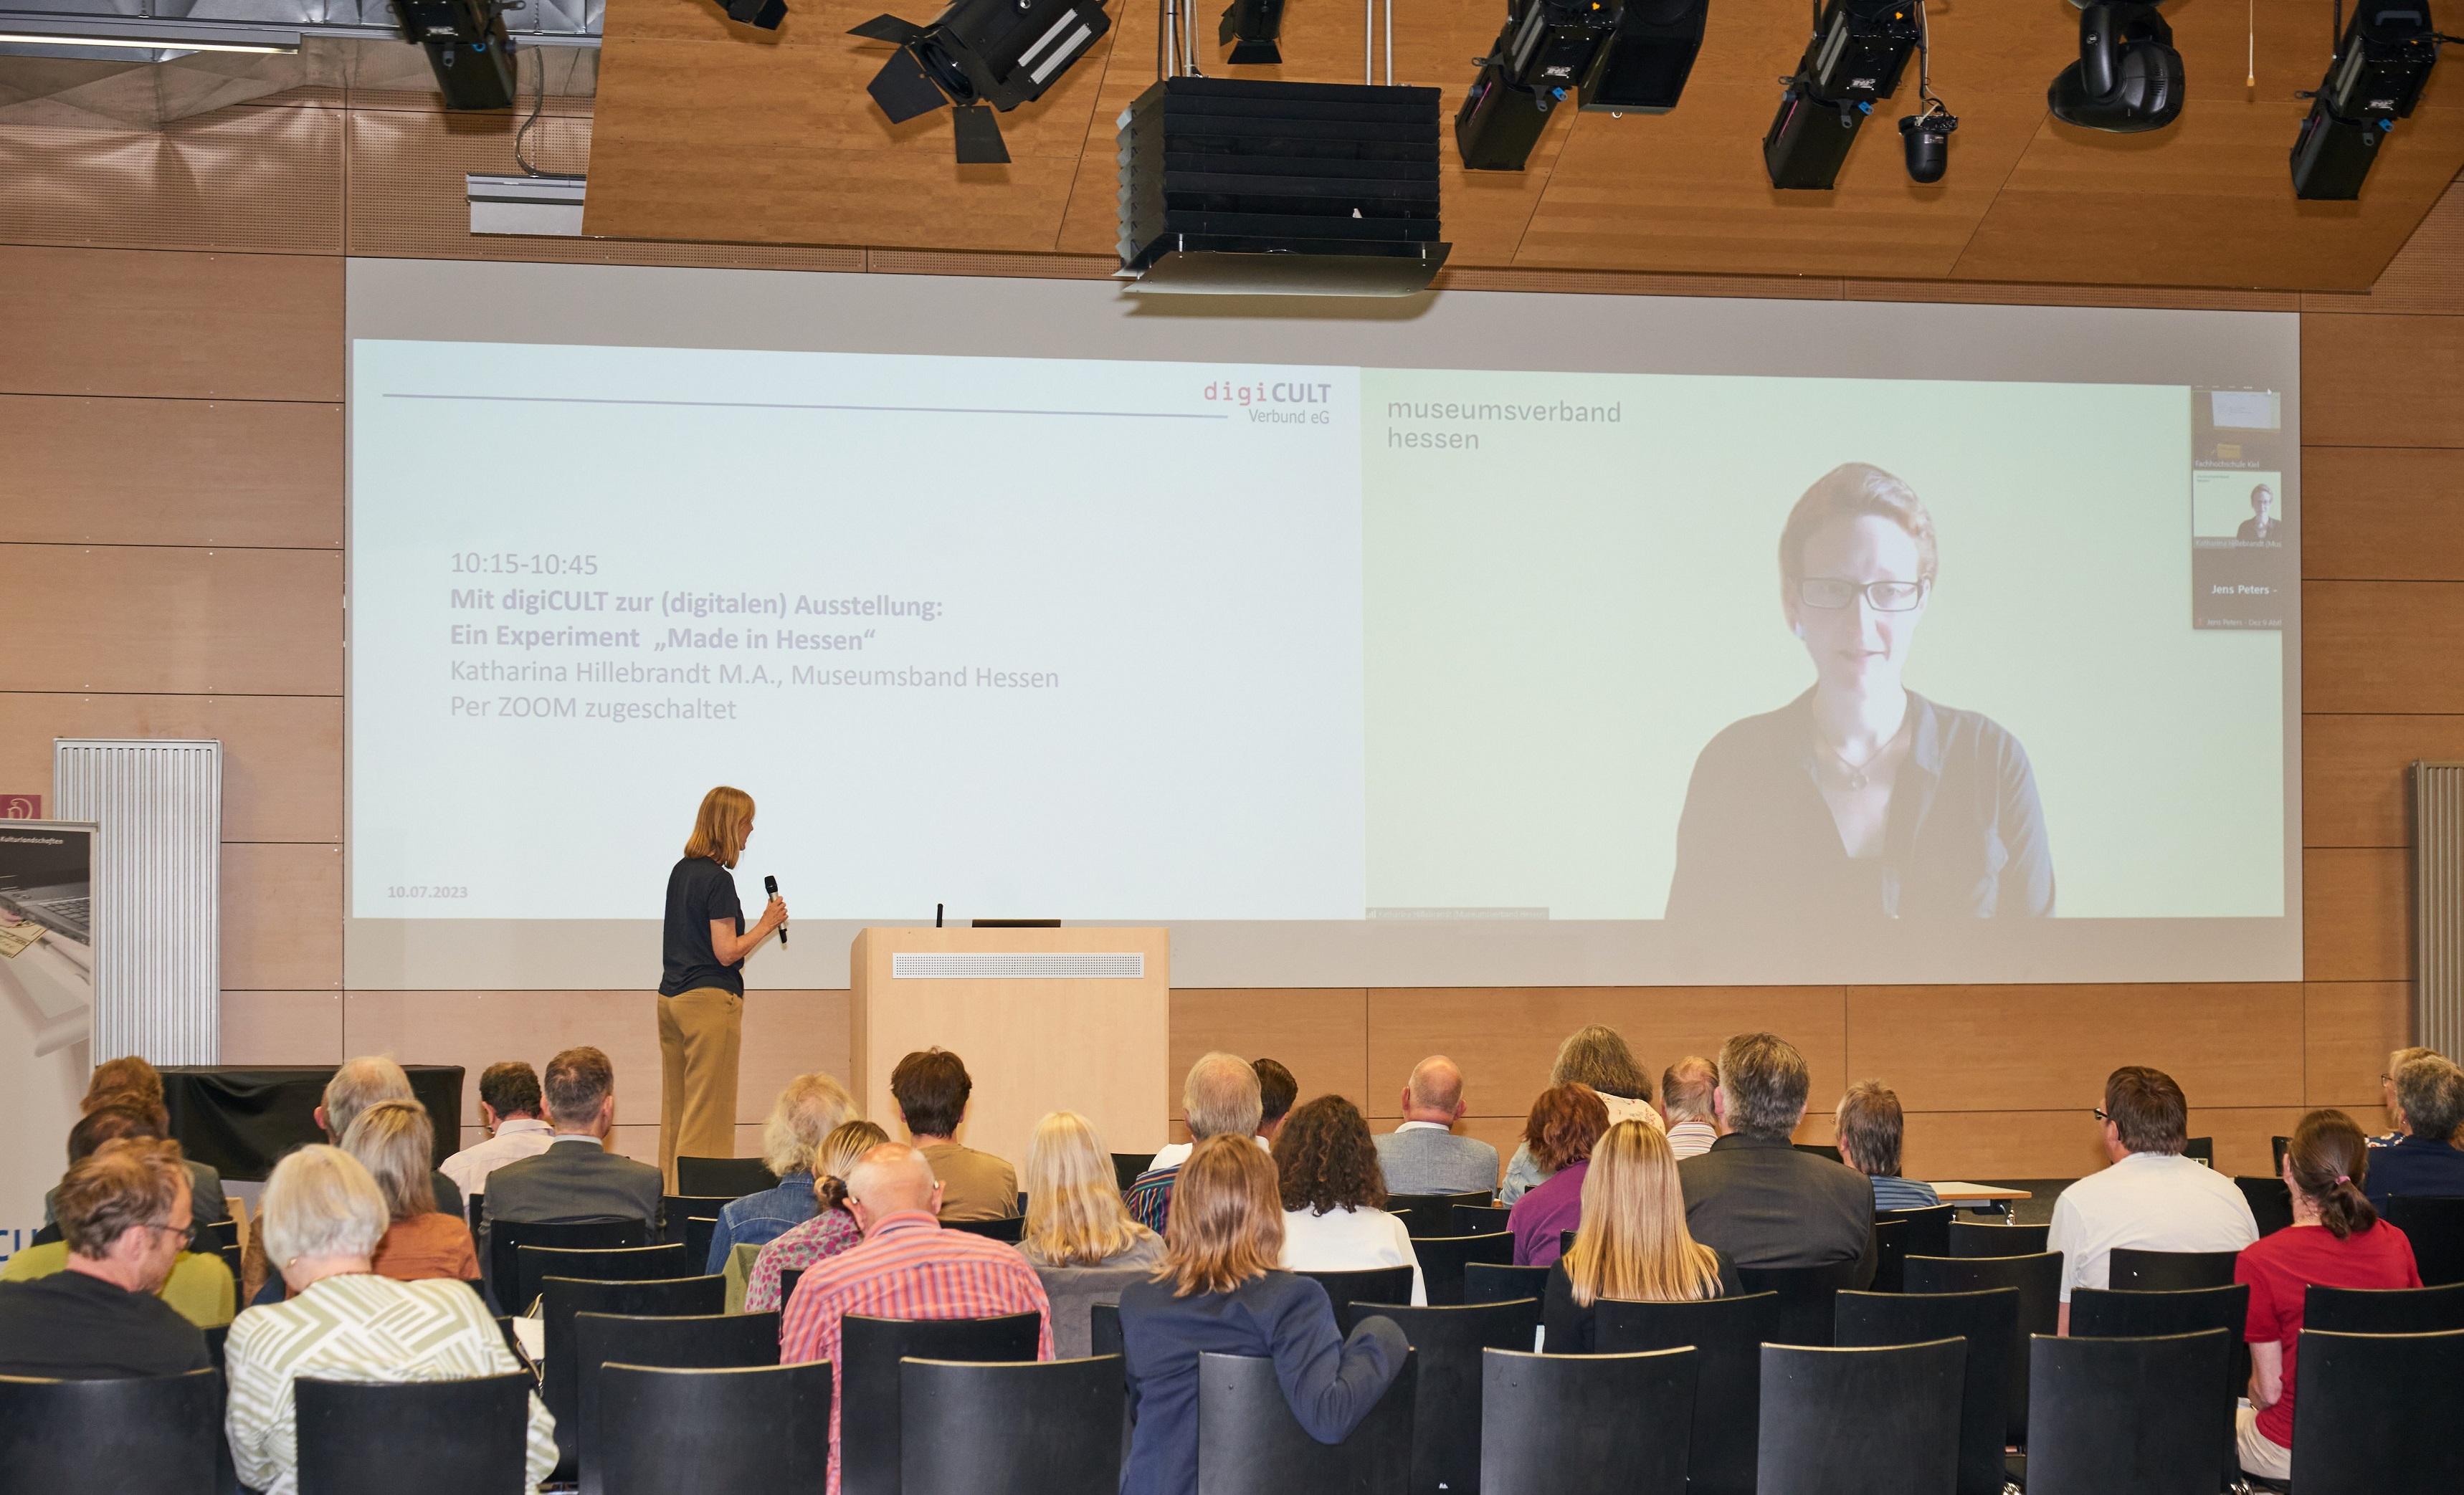 Katharina Hillebrandt vom Museumsverband Hessen erläutert den Aufbau der digitalen Ausstellung "Made in Hessen".